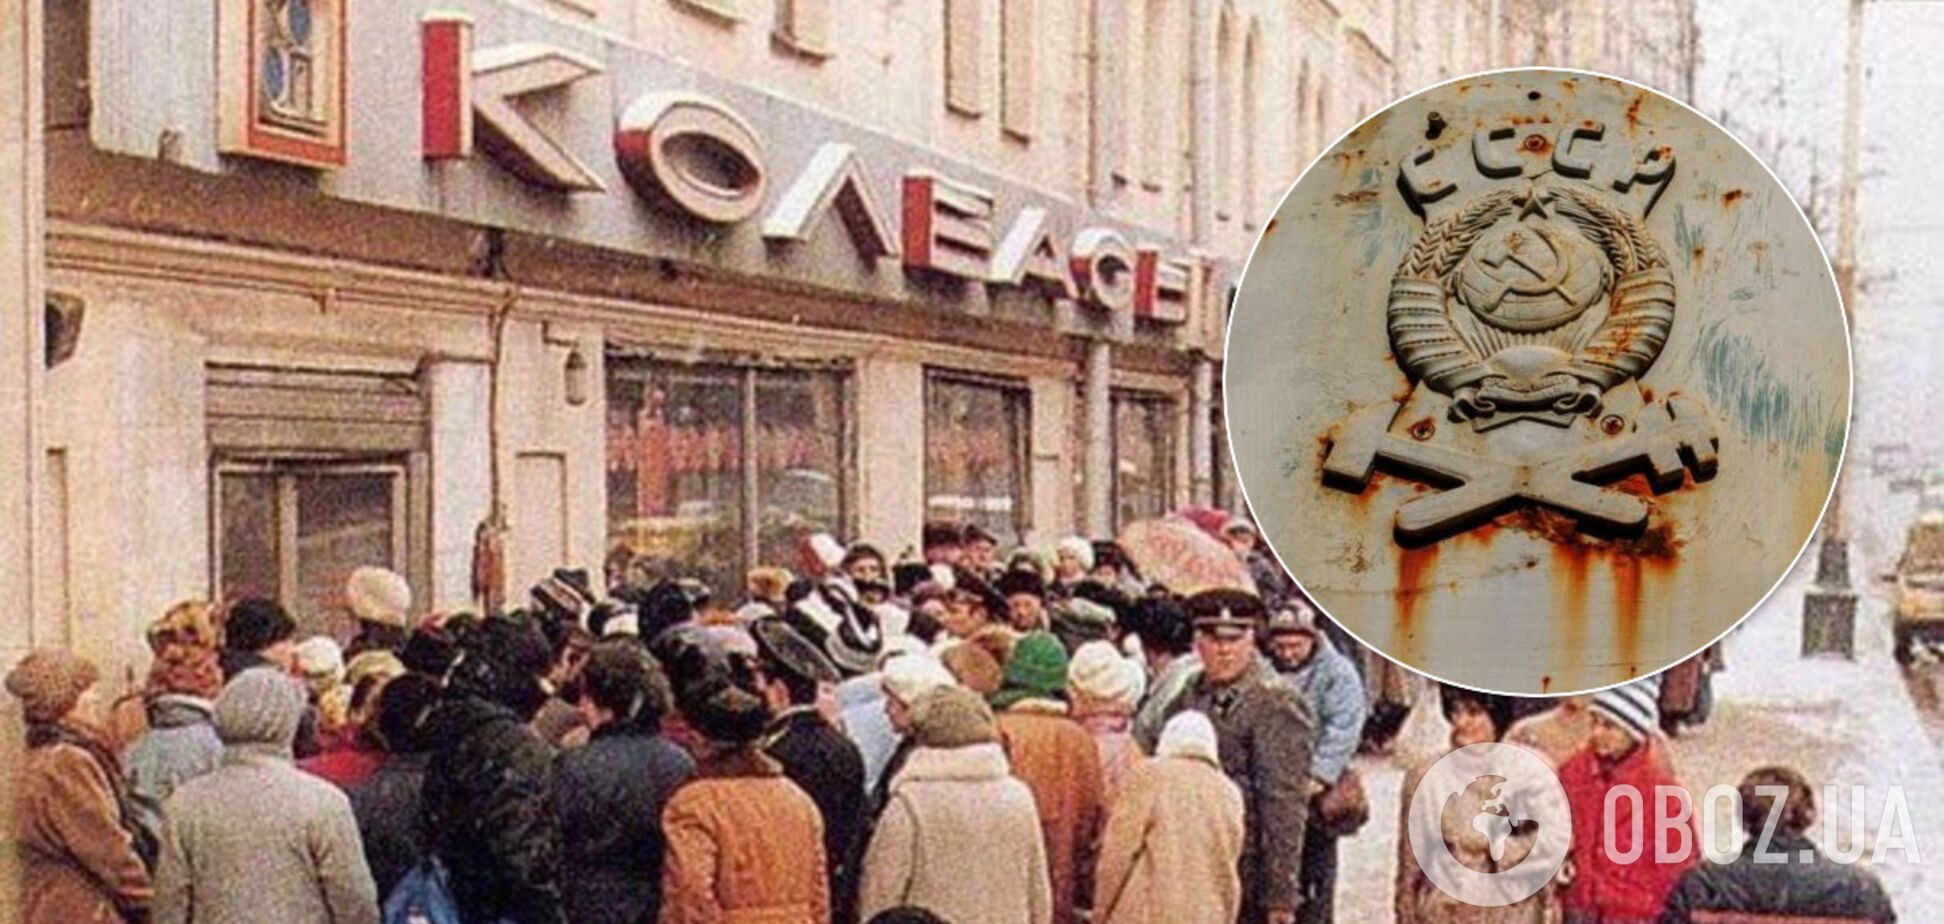 Был жуткий дефицит: в сети вспомнили знаменитую варенку по 2 рубля из СССР